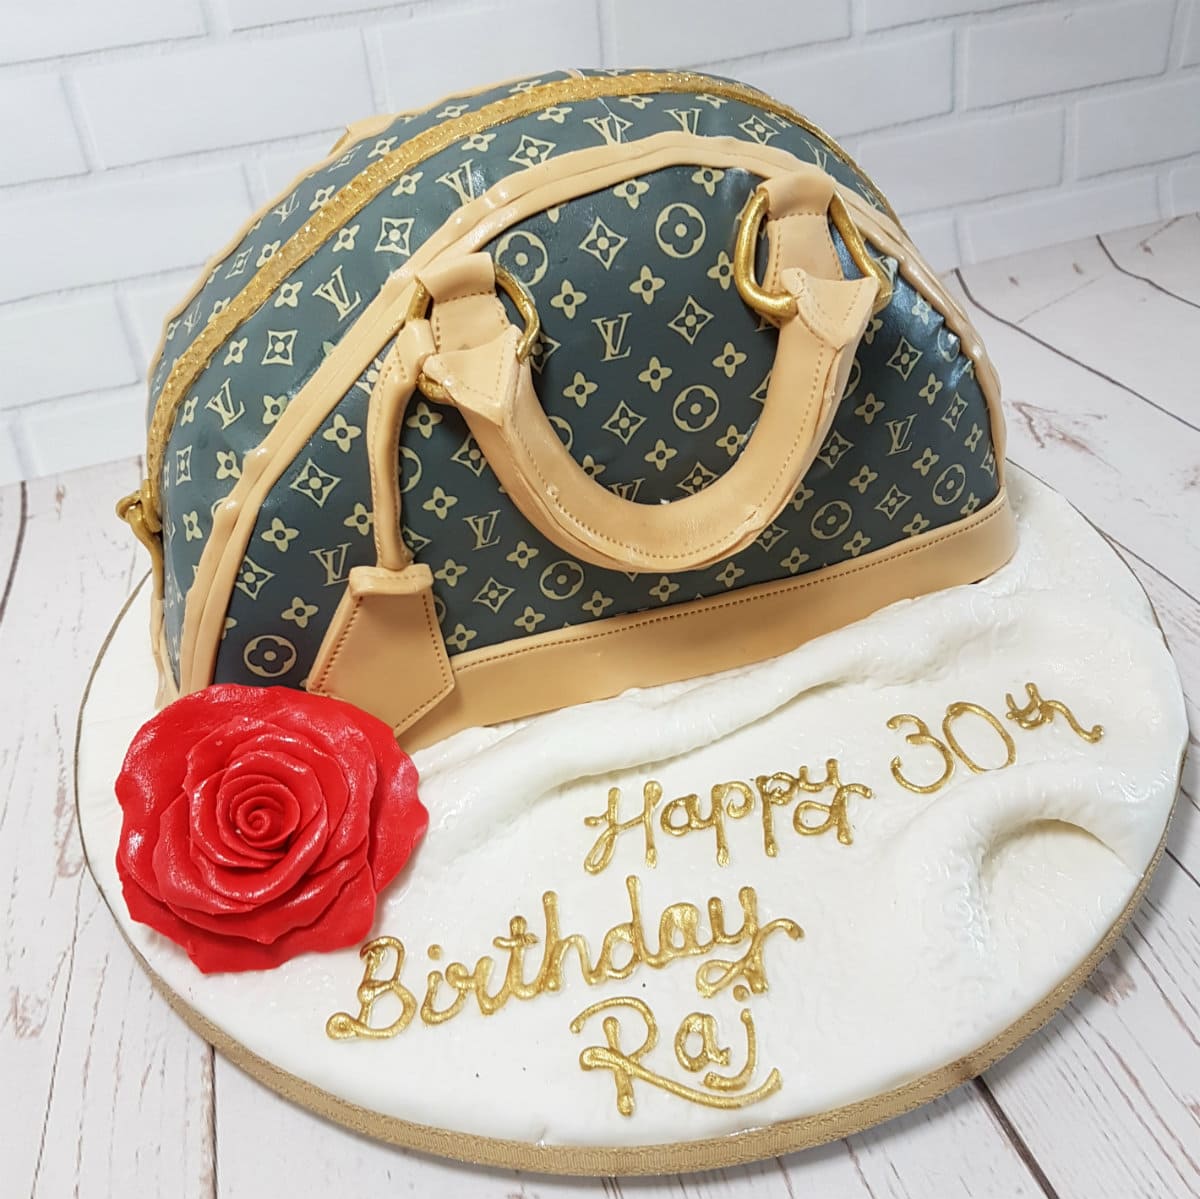 Luis Vuitton Birthday Cake  Elegant birthday cakes, Cupcake cakes,  Celebration cakes